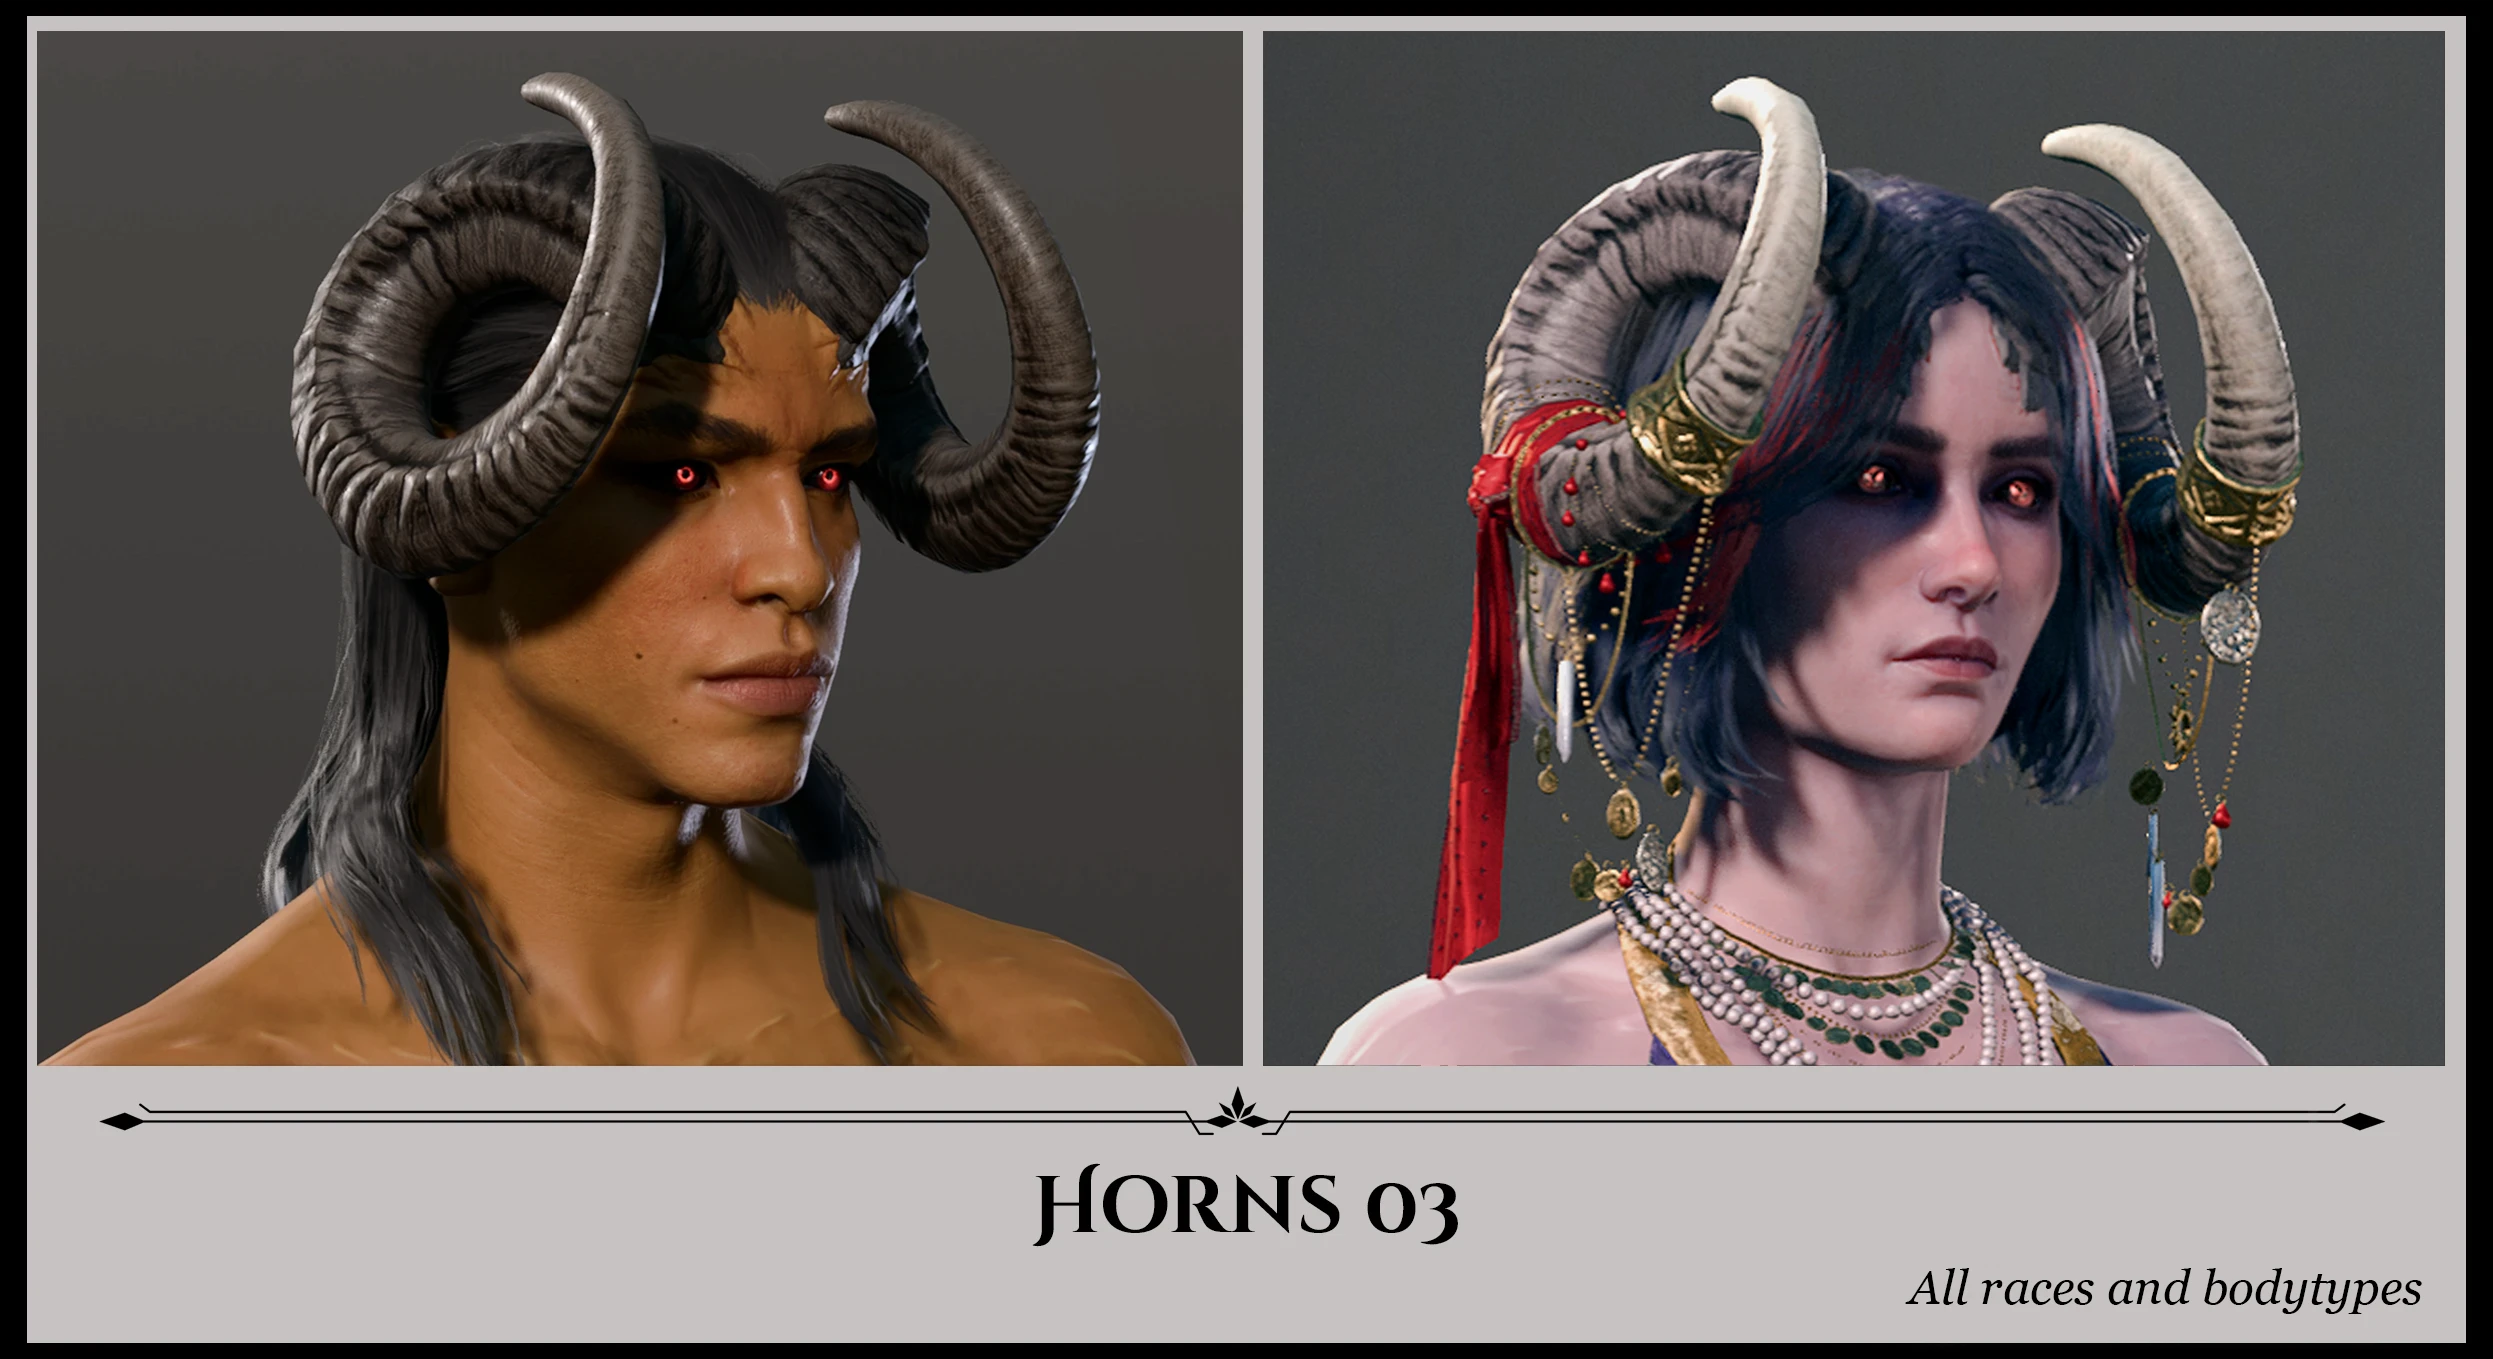 Portraits de deux personnages de Baldur's Gate 3, avec des cornes en forme de bélier, gracieuseté du mod Horns of Faerun.